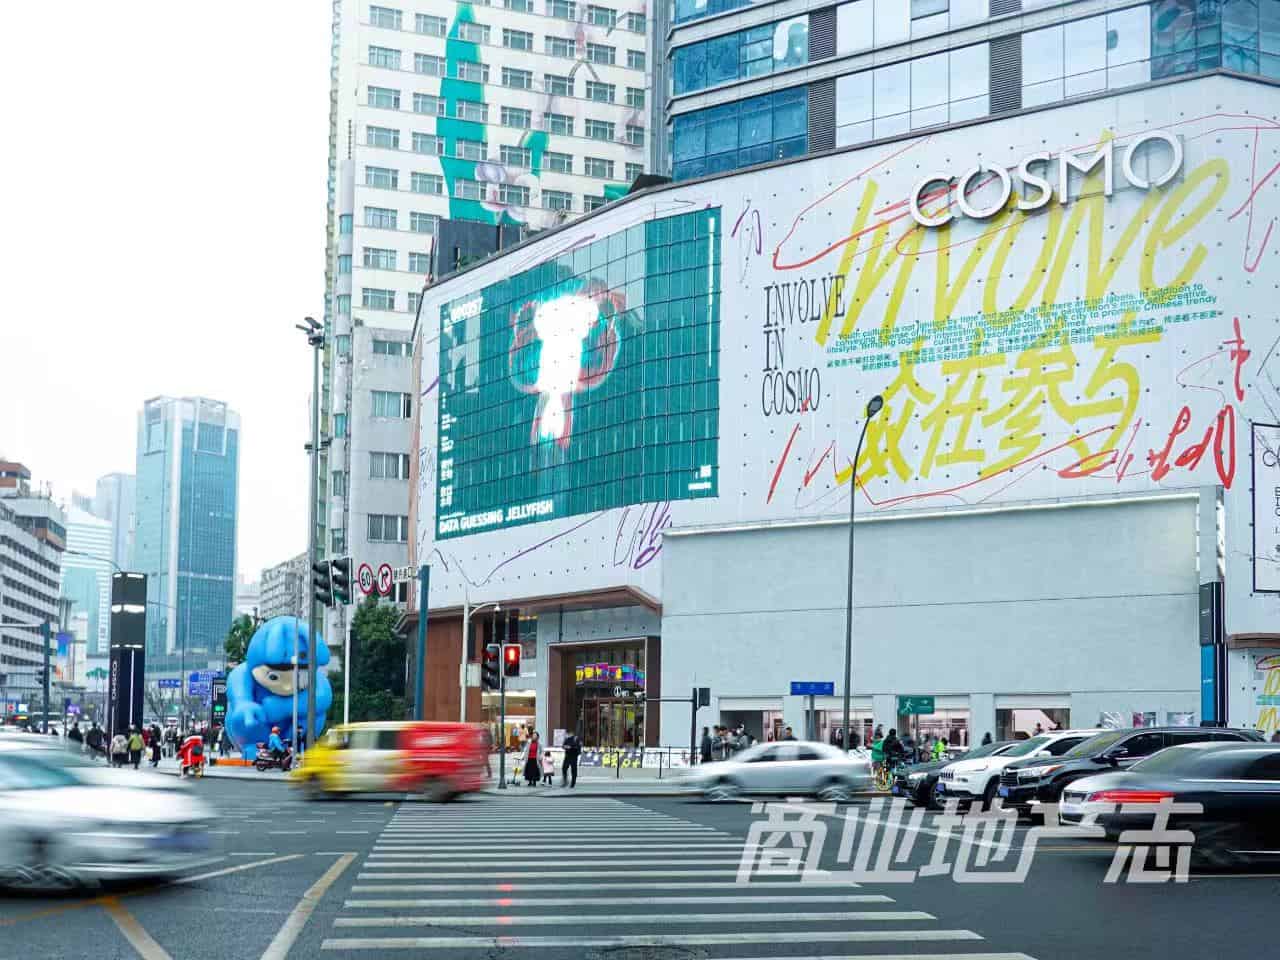 Cosmo Mall chengdu chengdu expat